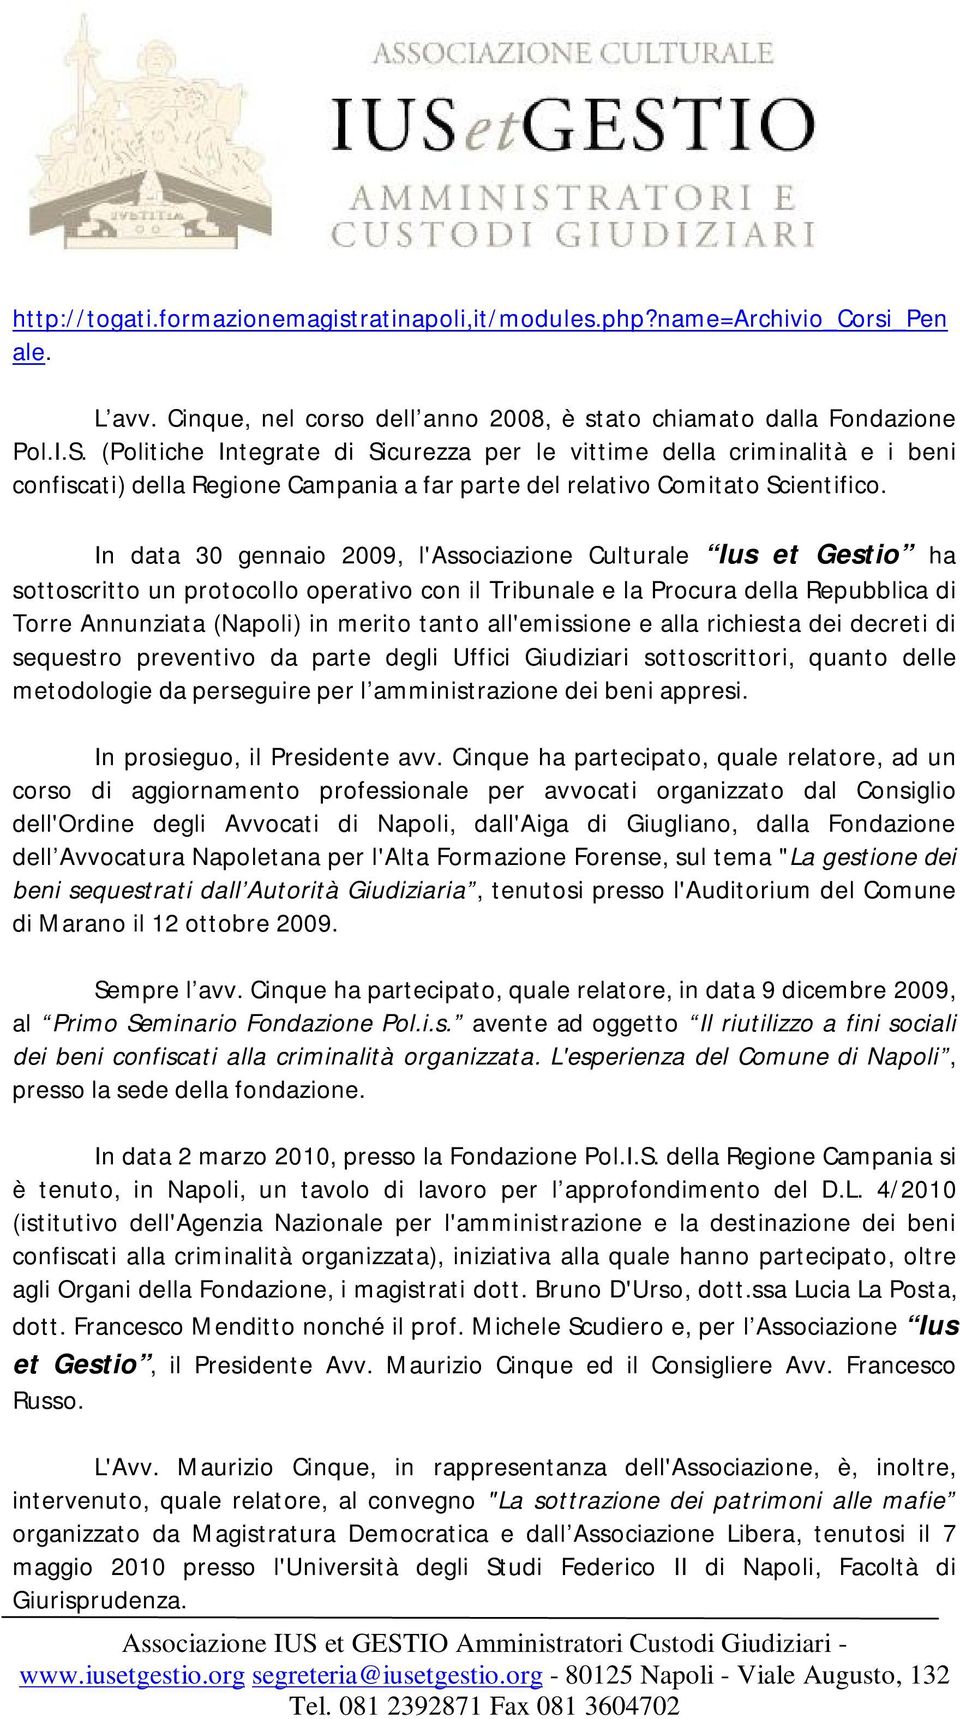 In data 30 gennaio 2009, l'associazione Culturale Ius et Gestio ha sottoscritto un protocollo operativo con il Tribunale e la Procura della Repubblica di Torre Annunziata (Napoli) in merito tanto